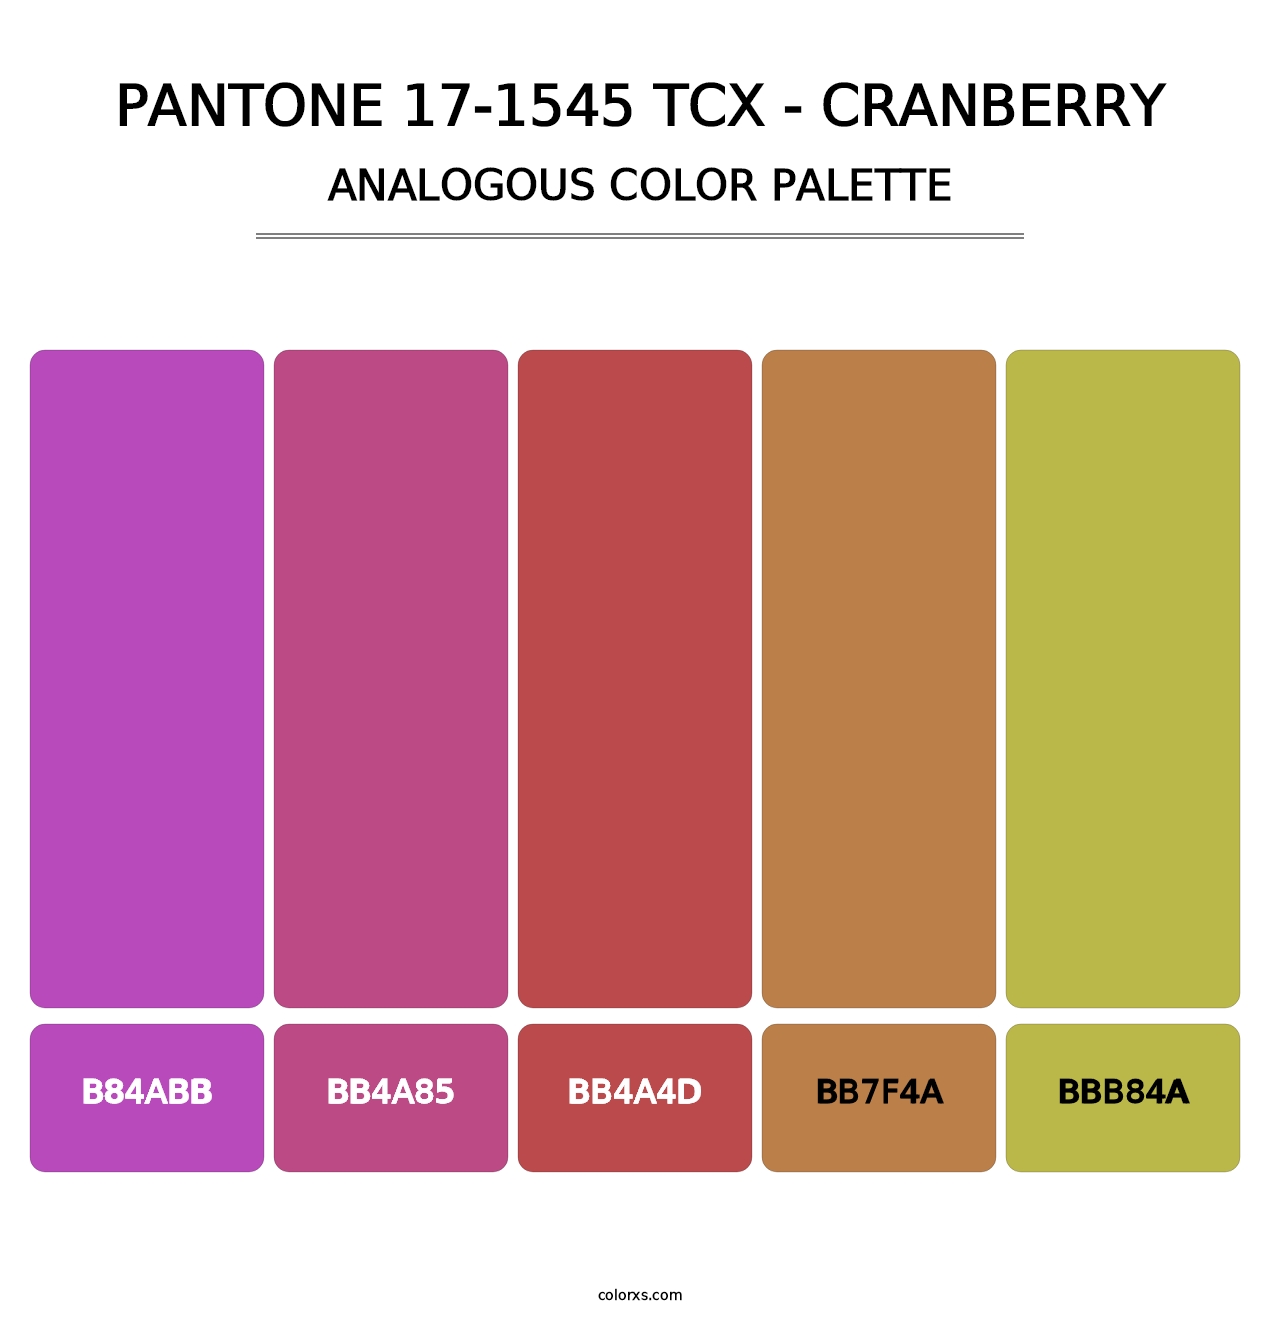 PANTONE 17-1545 TCX - Cranberry - Analogous Color Palette